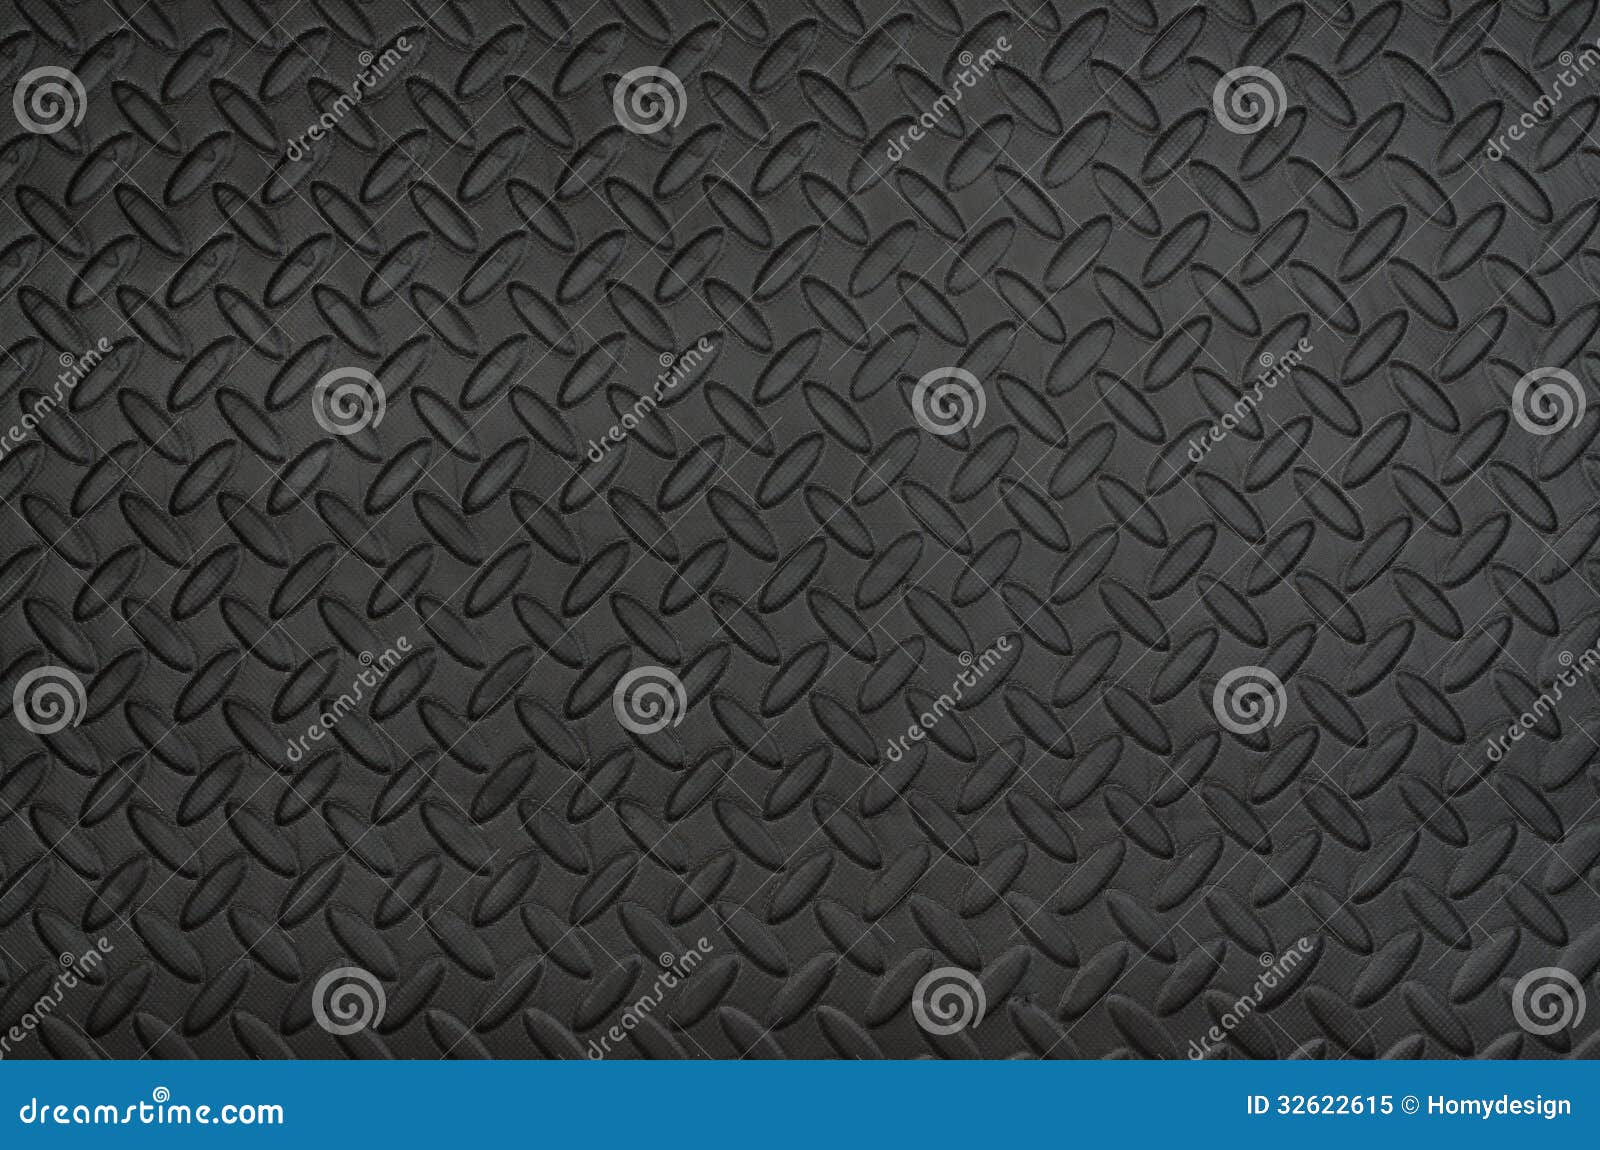 Closeup of black rubber mat texture, Stock image